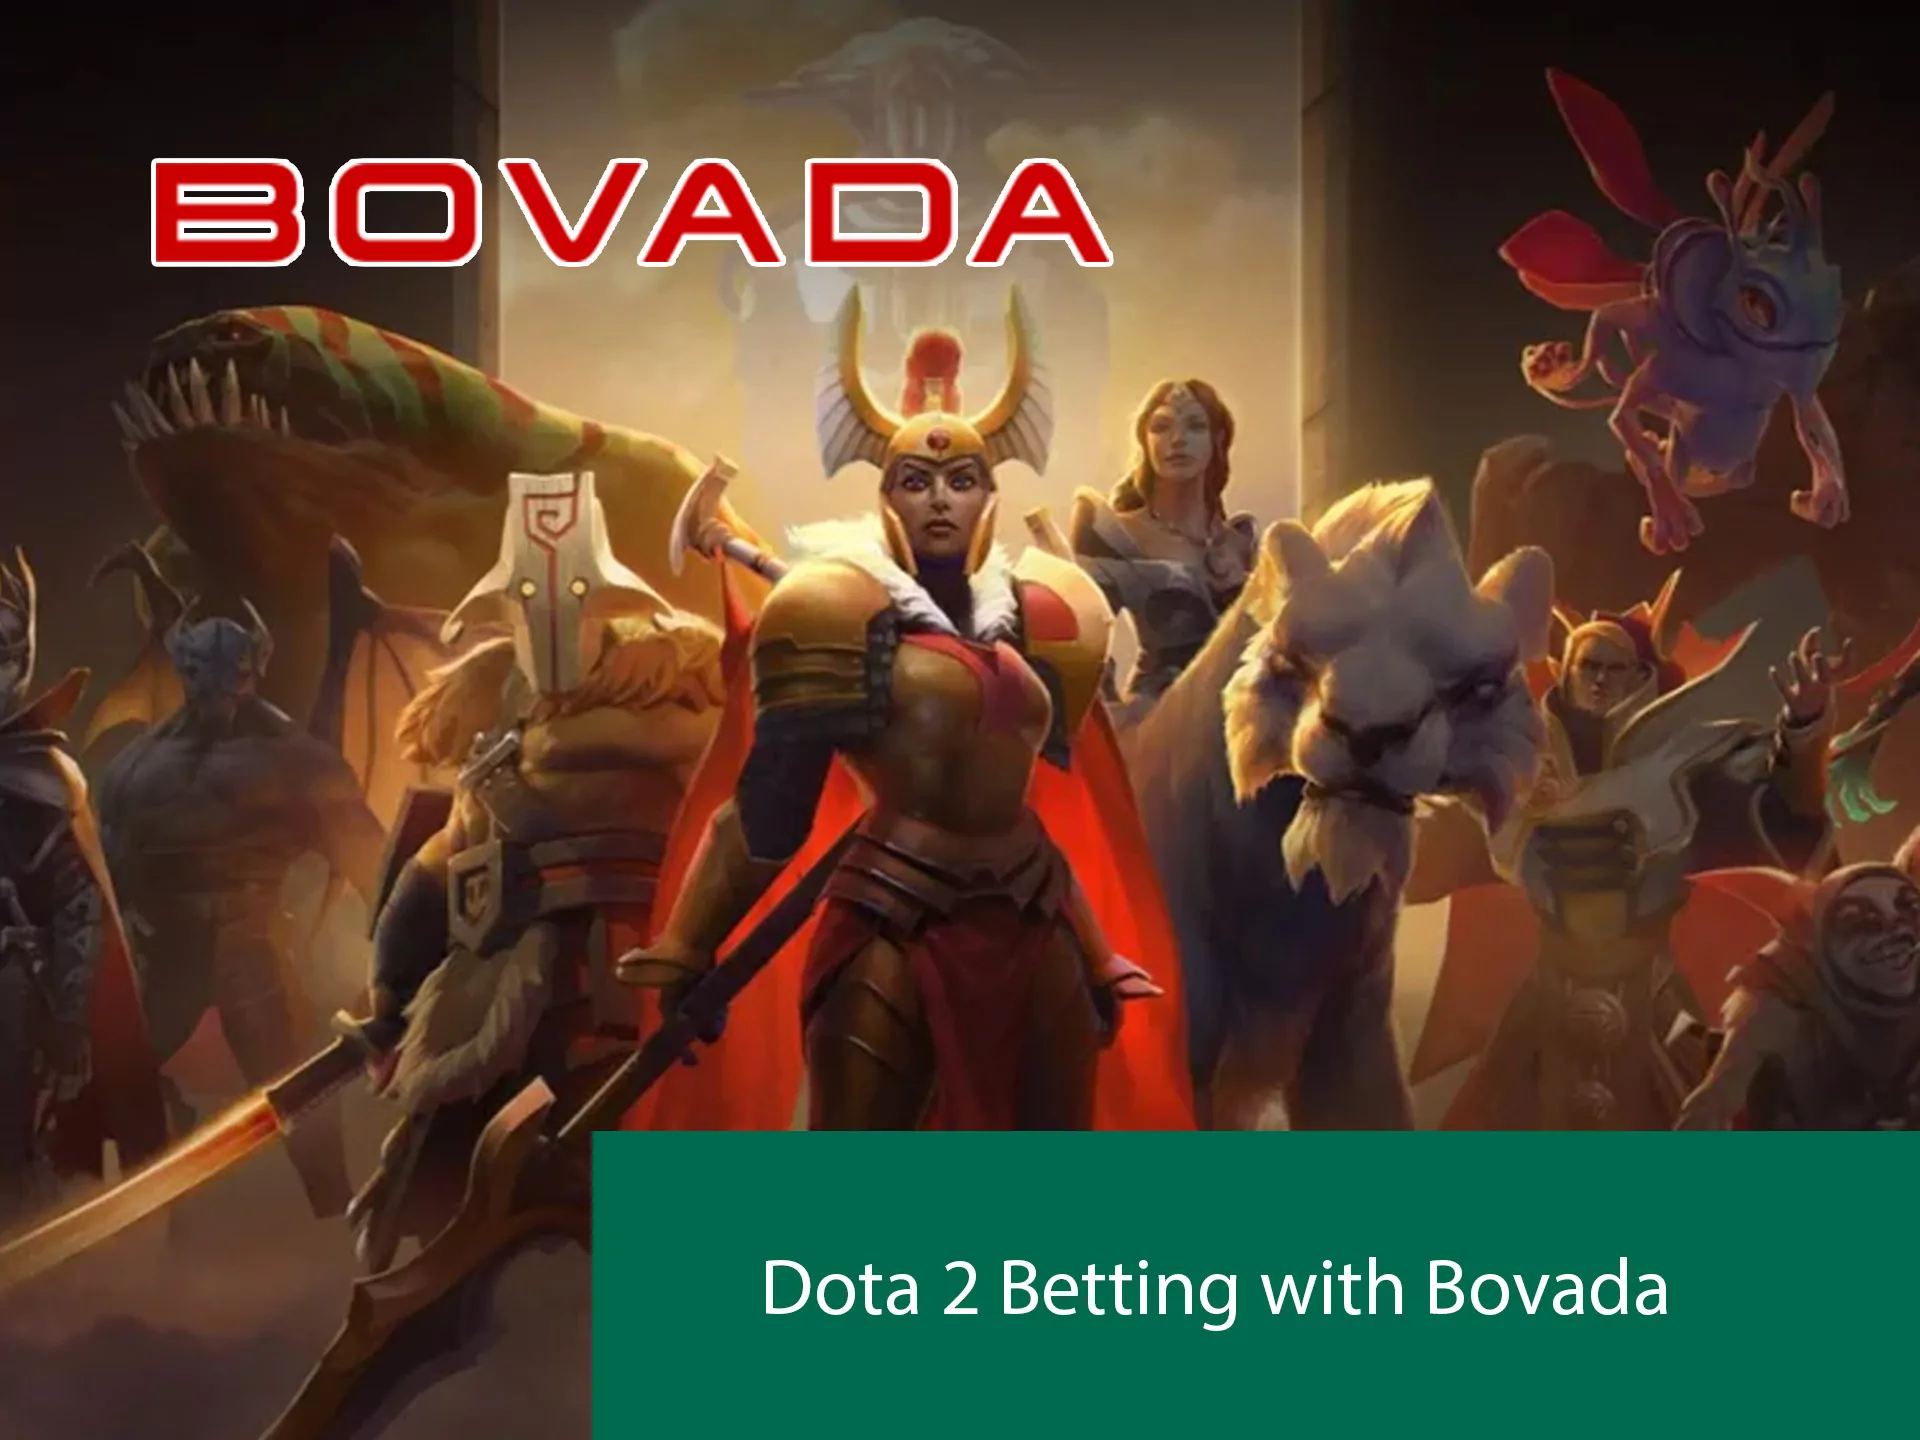 Bovada has Dota 2 in range.